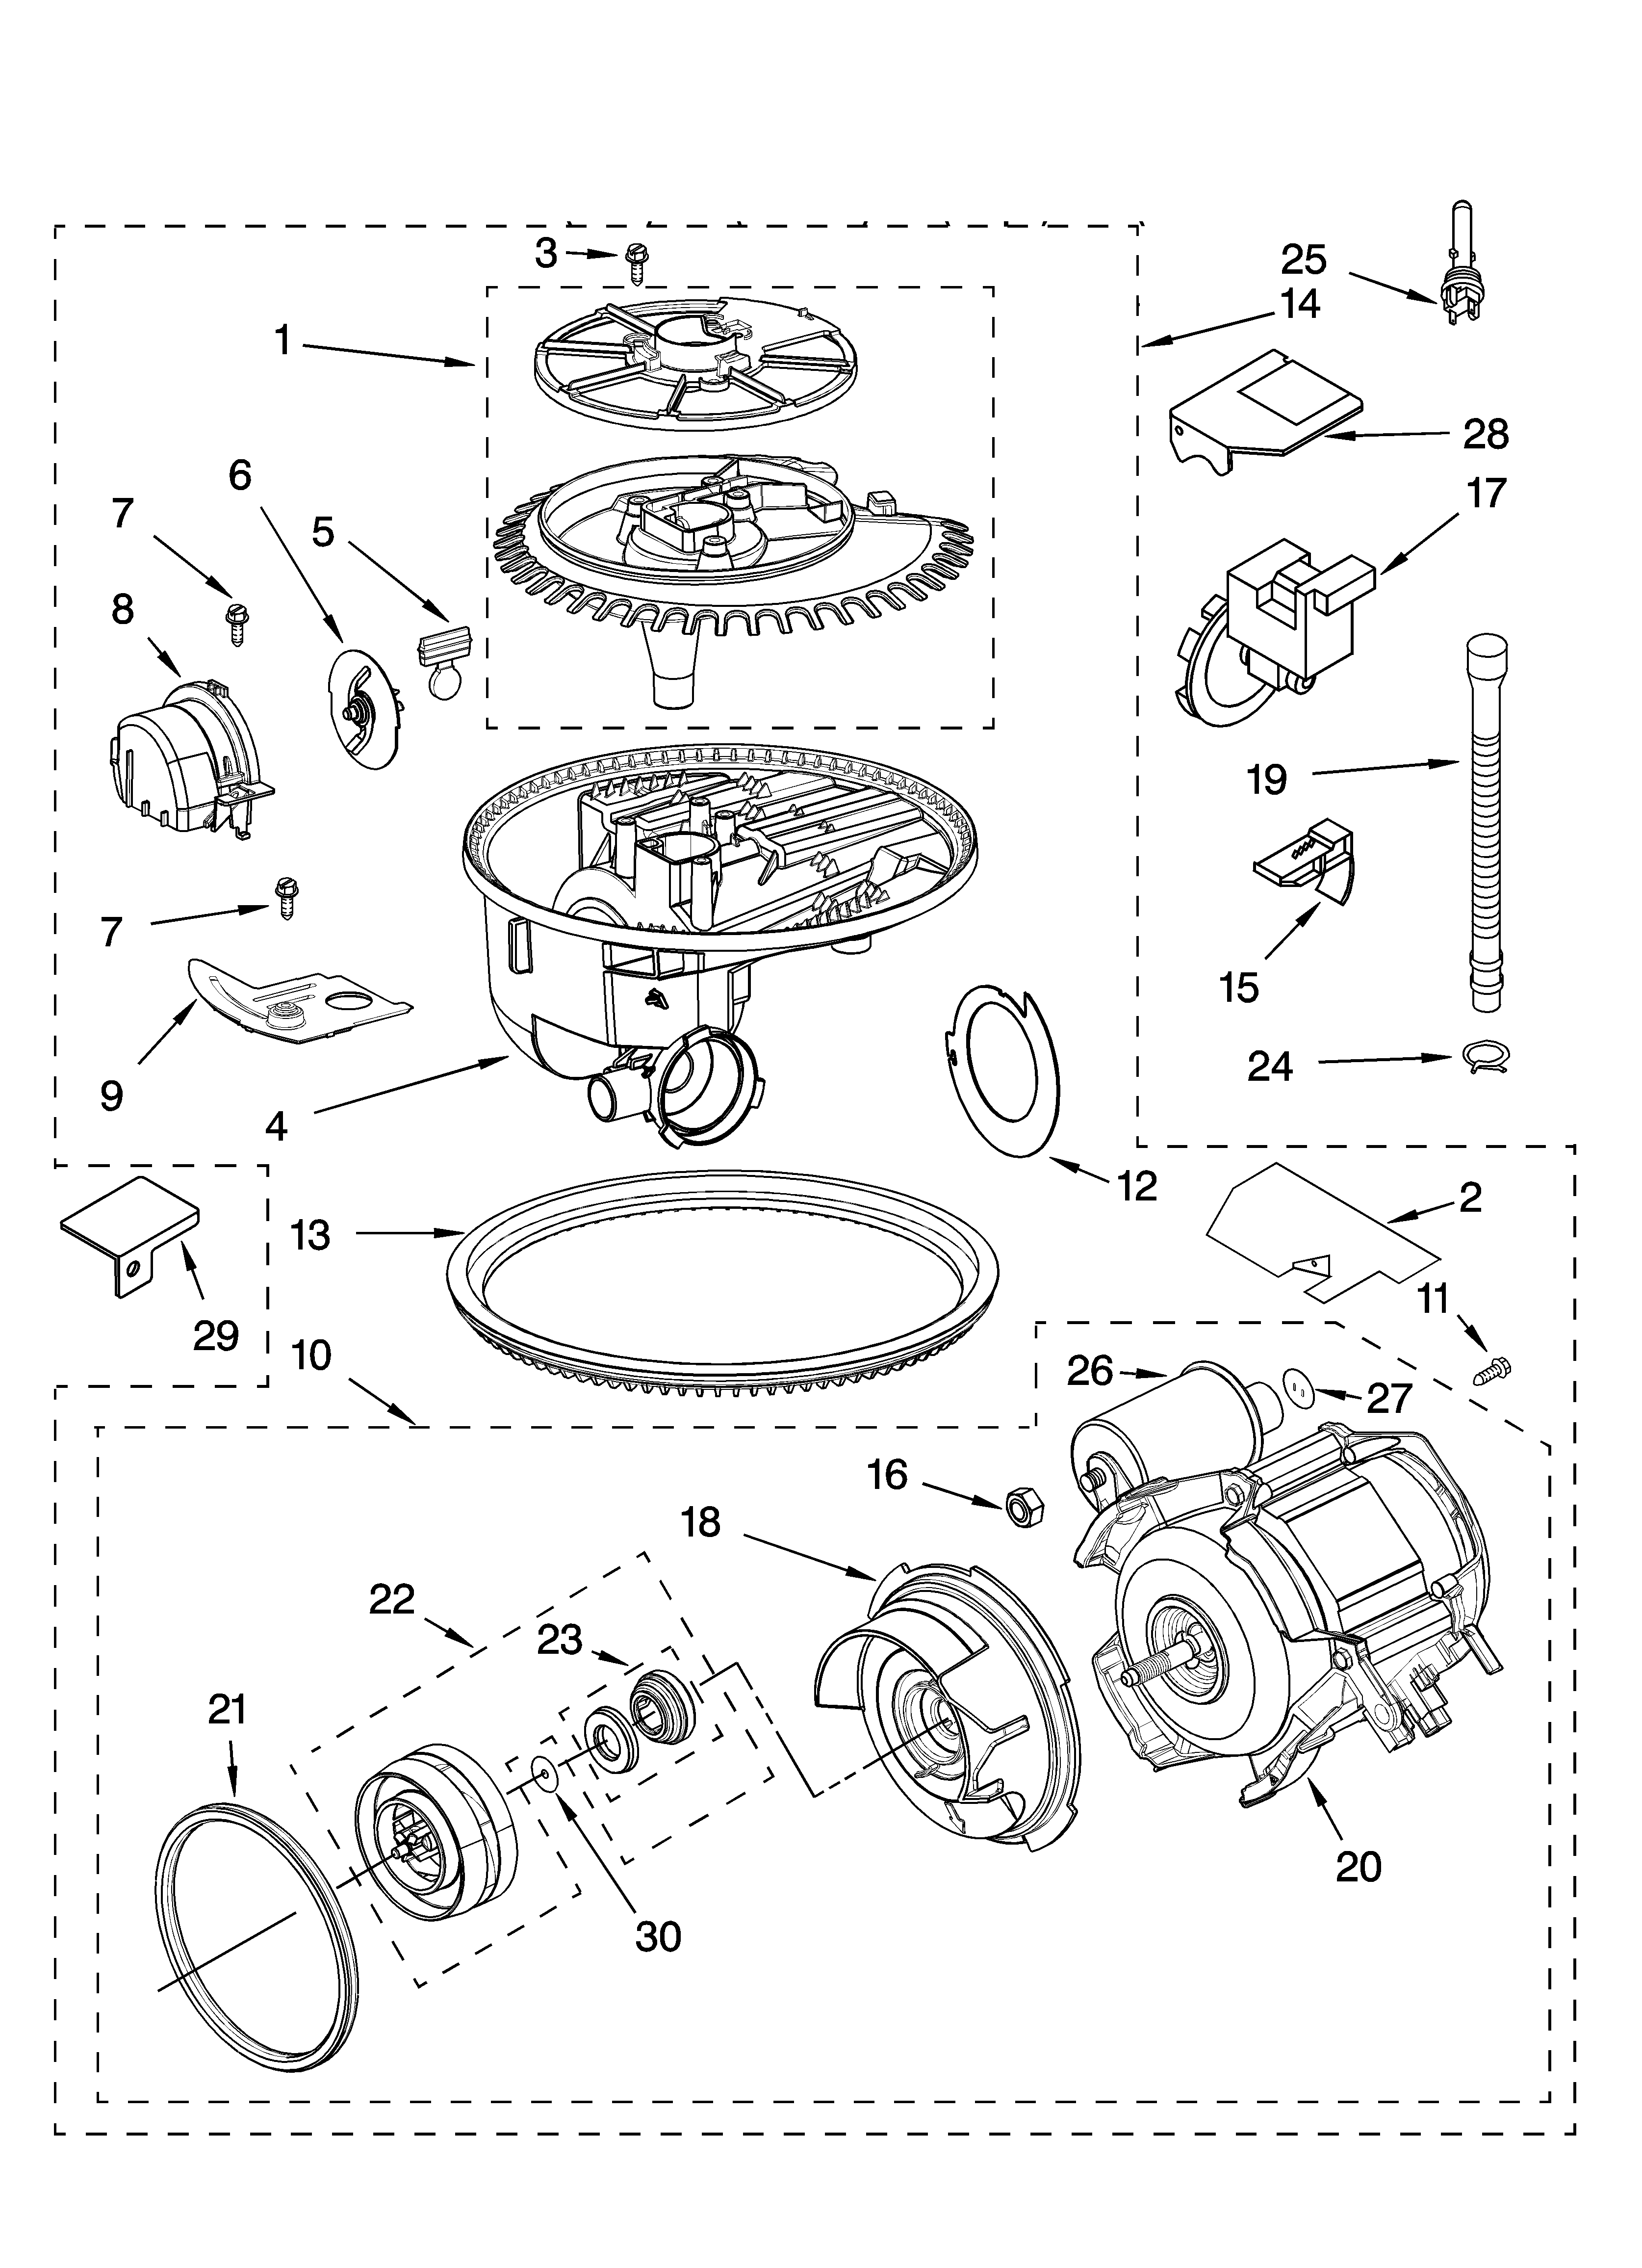 Kenmore ultra wash 2 dishwasher manual